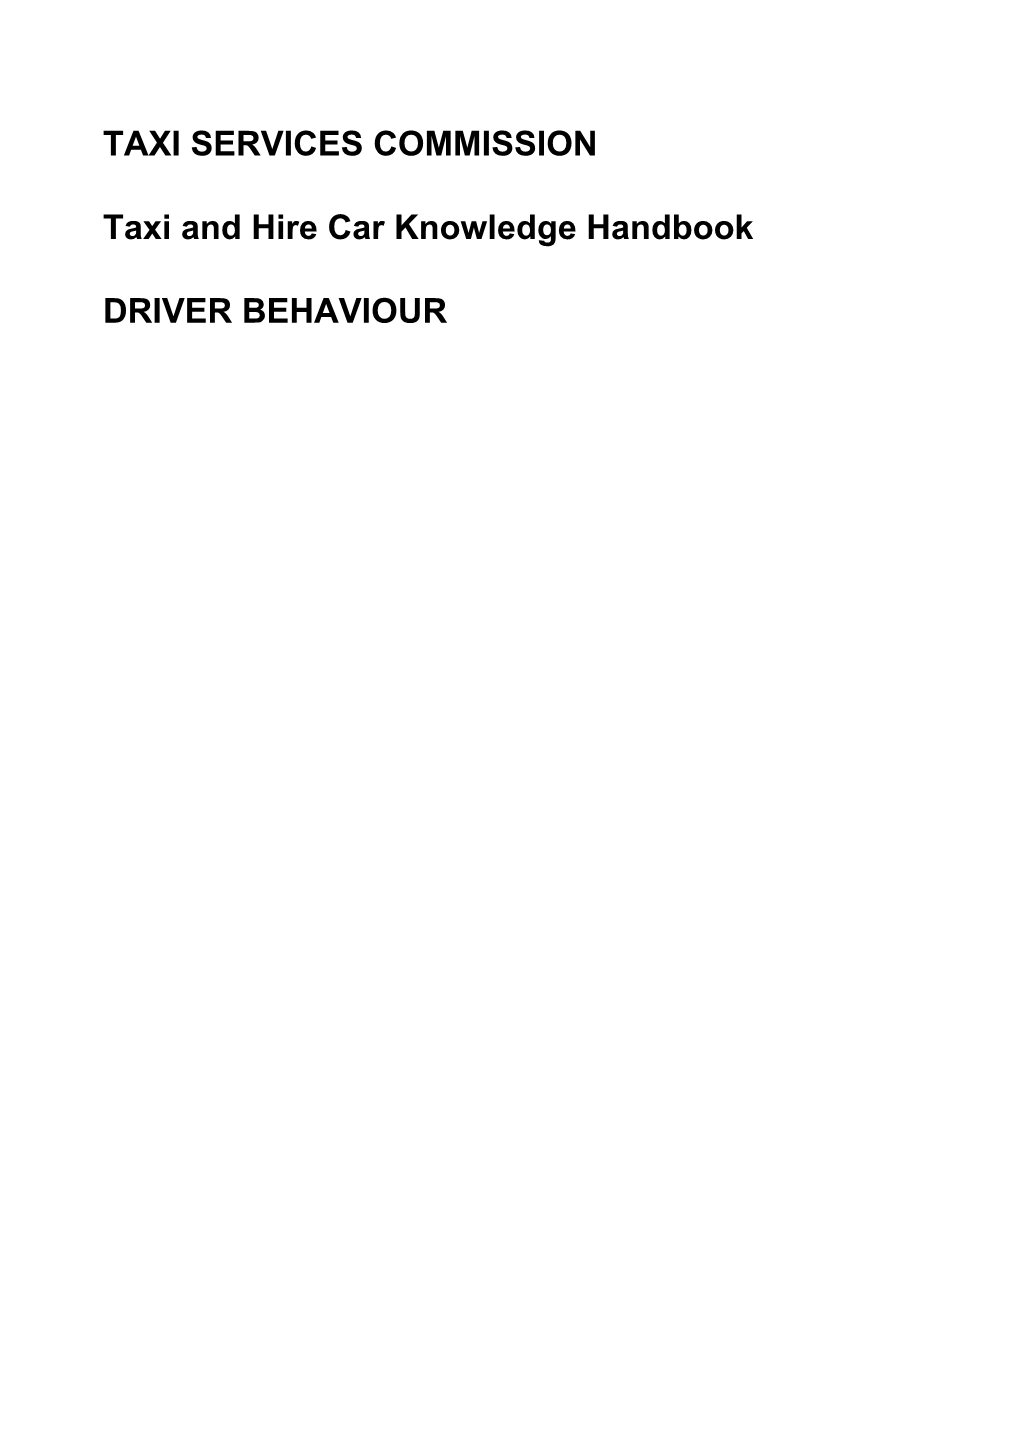 Knowledge Handbook - Driver Behaviour